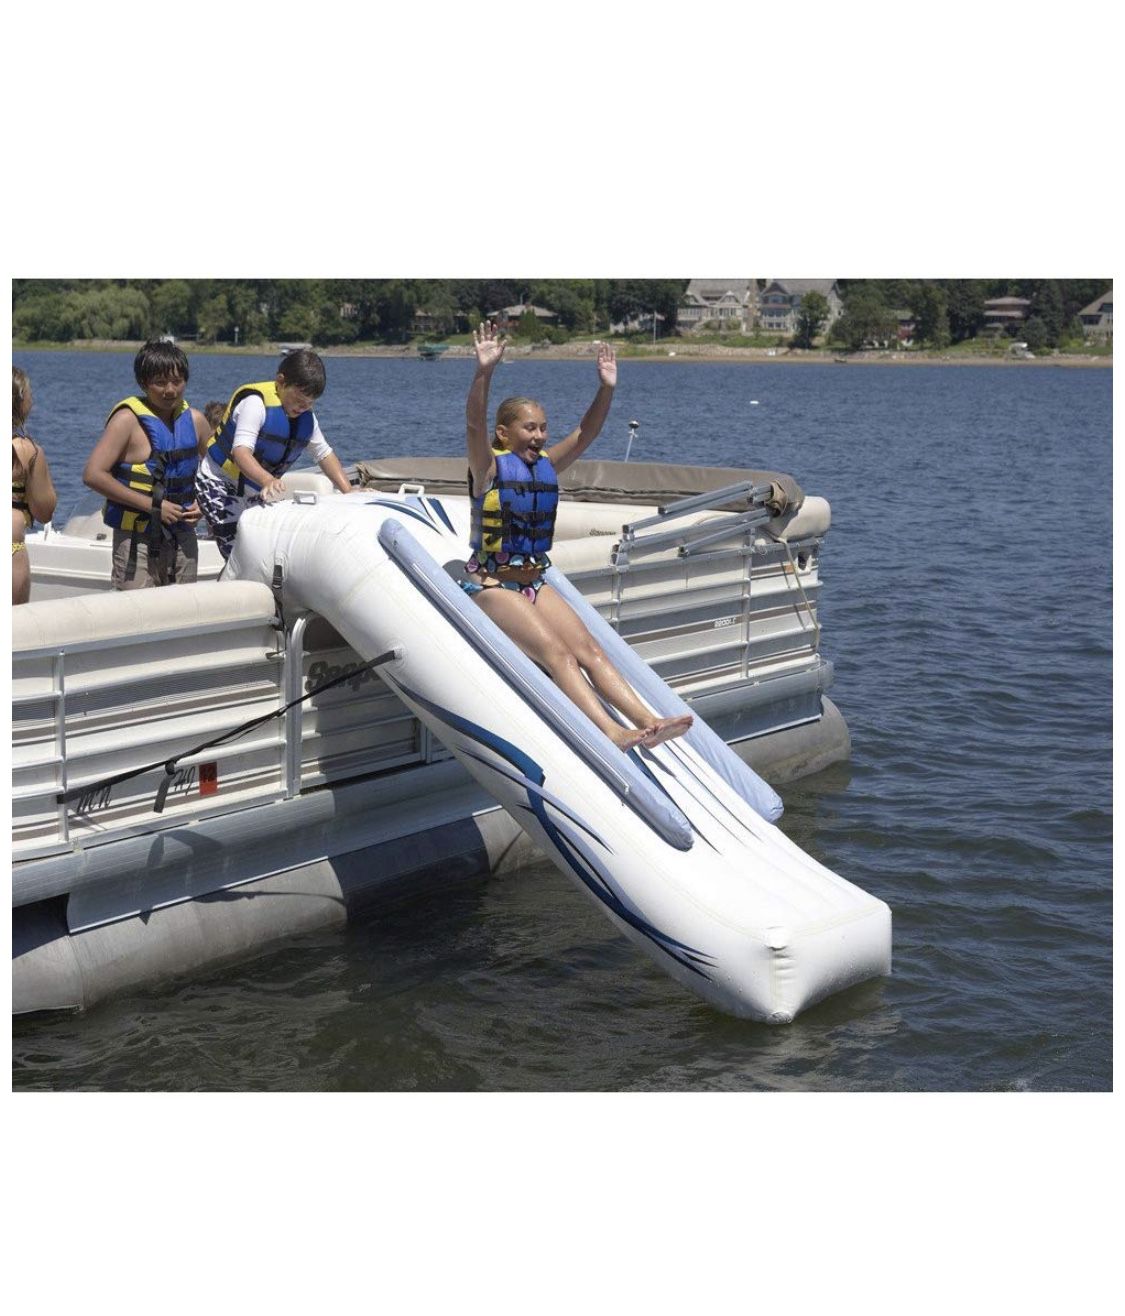 Rave sports pontoon or deckboat inflatable slide